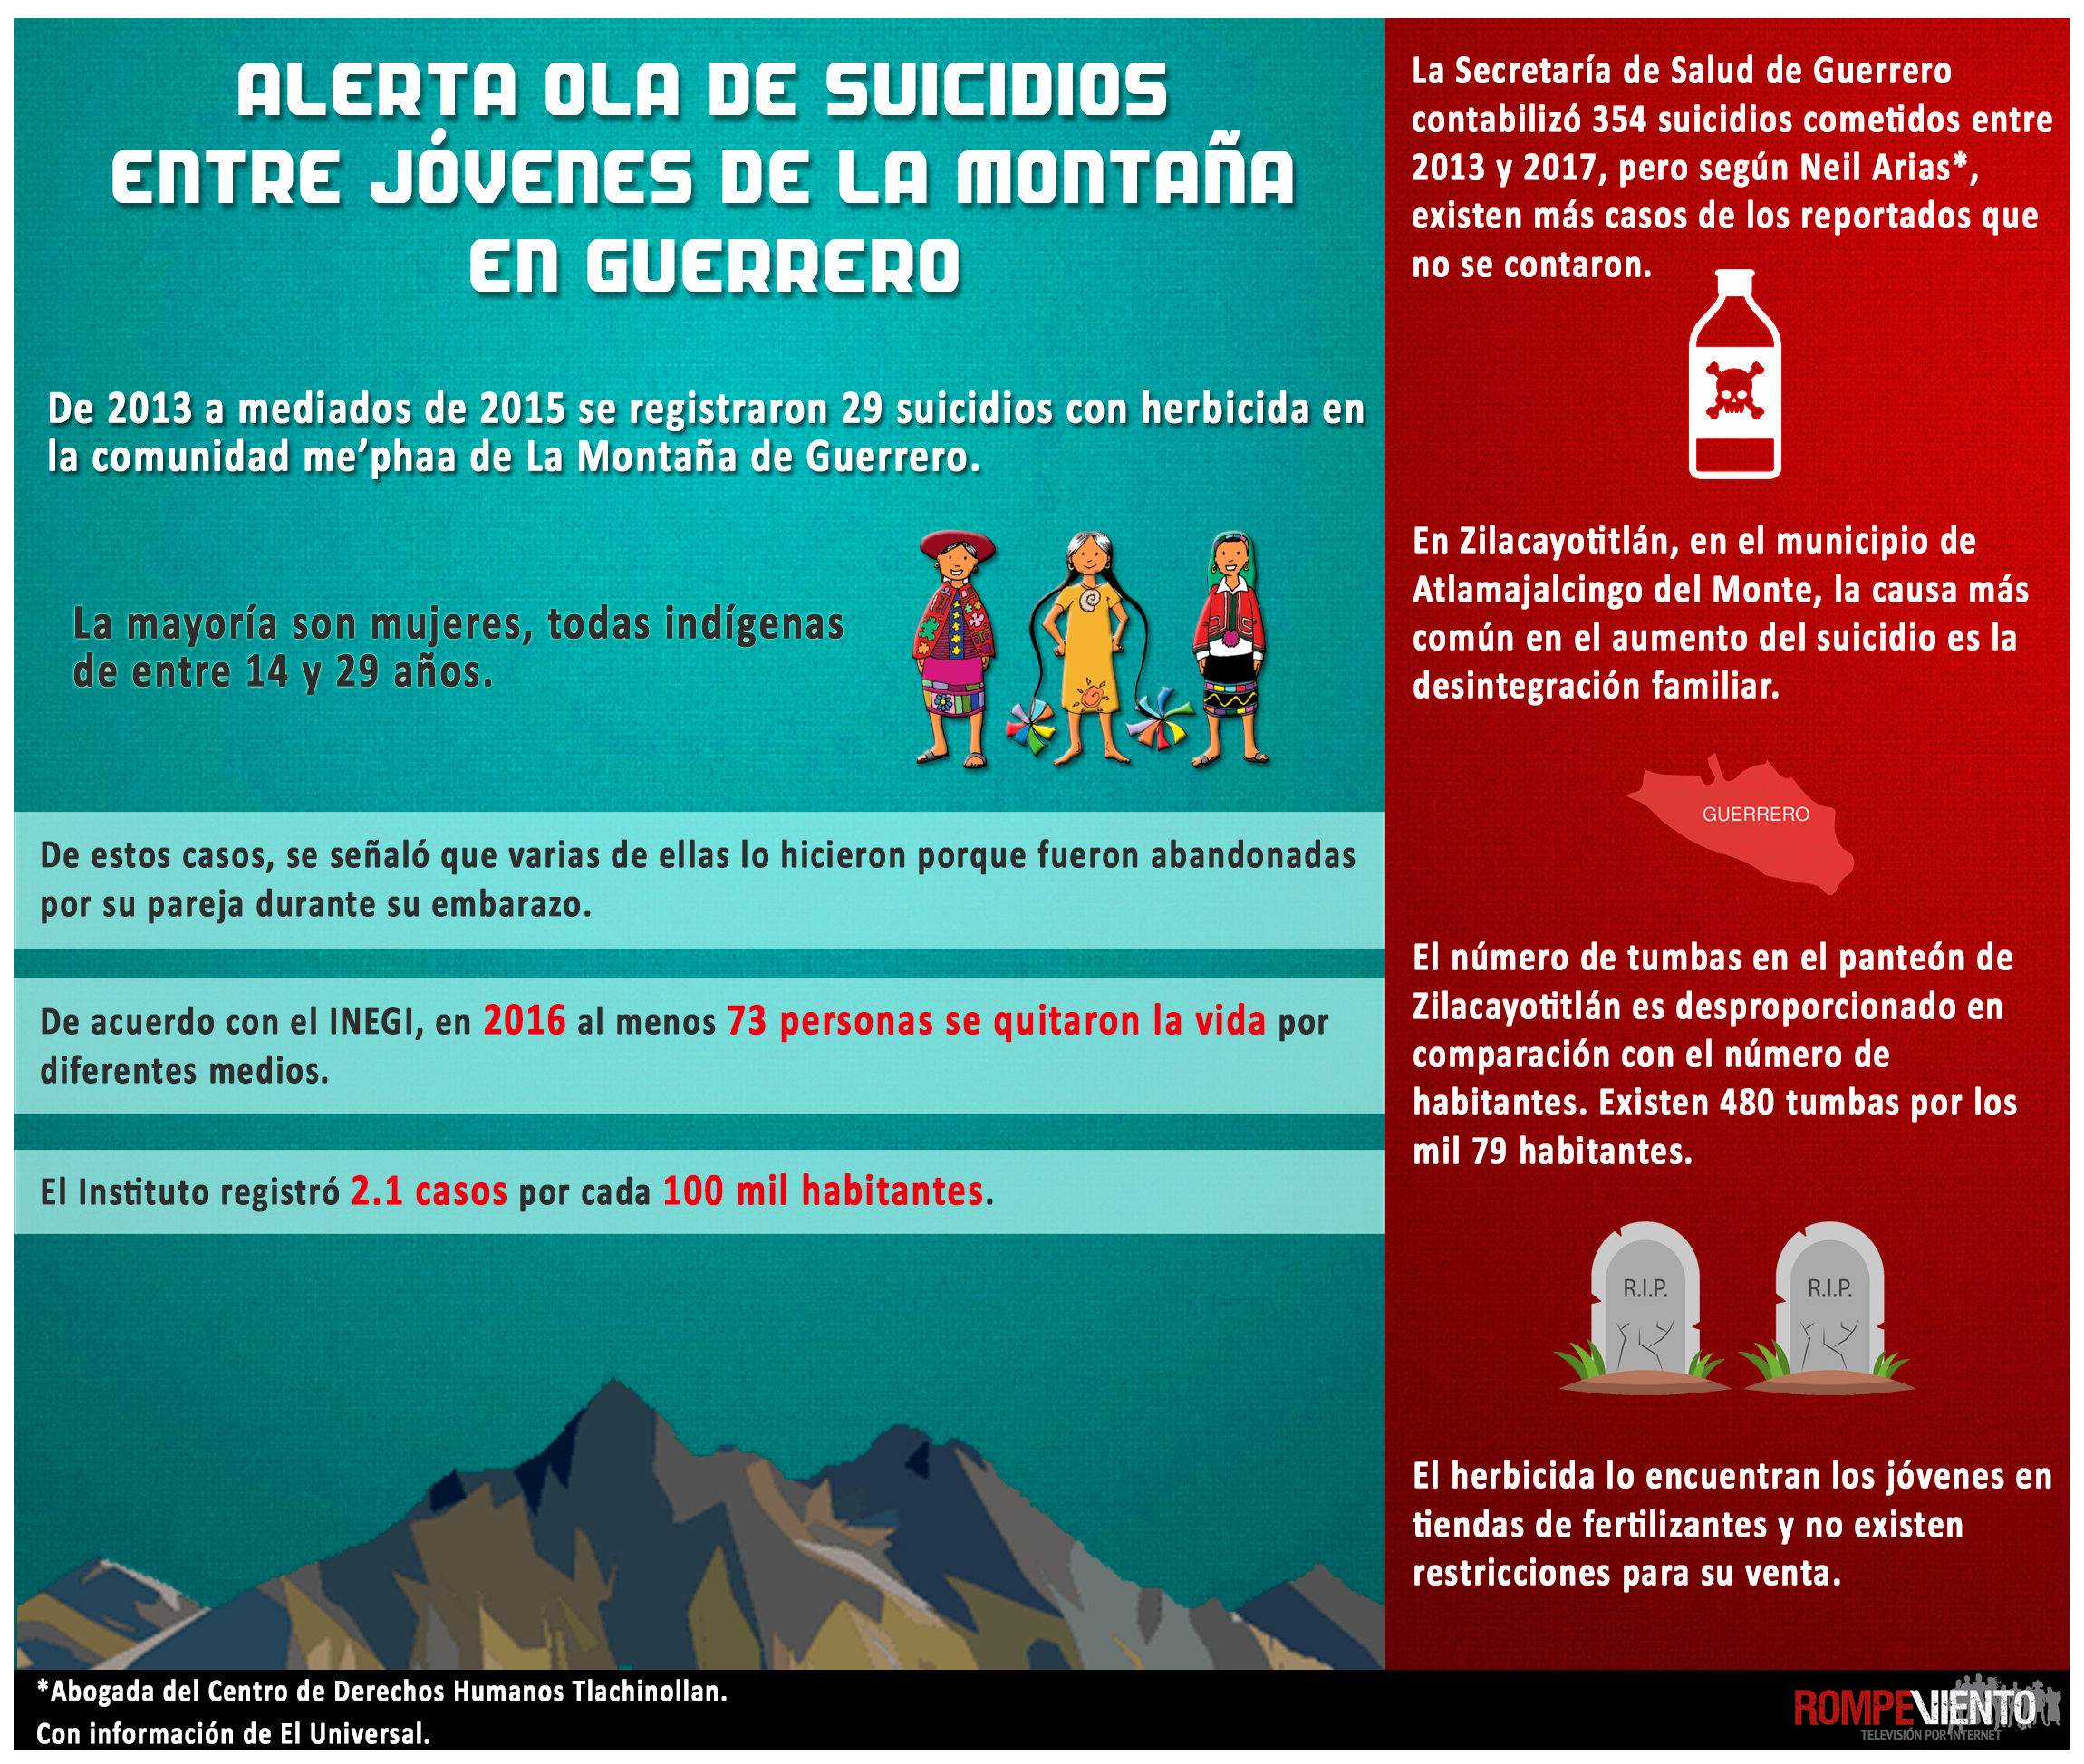 Alerta ola de suicidios entre jóvenes de La Montaña en Guerrero